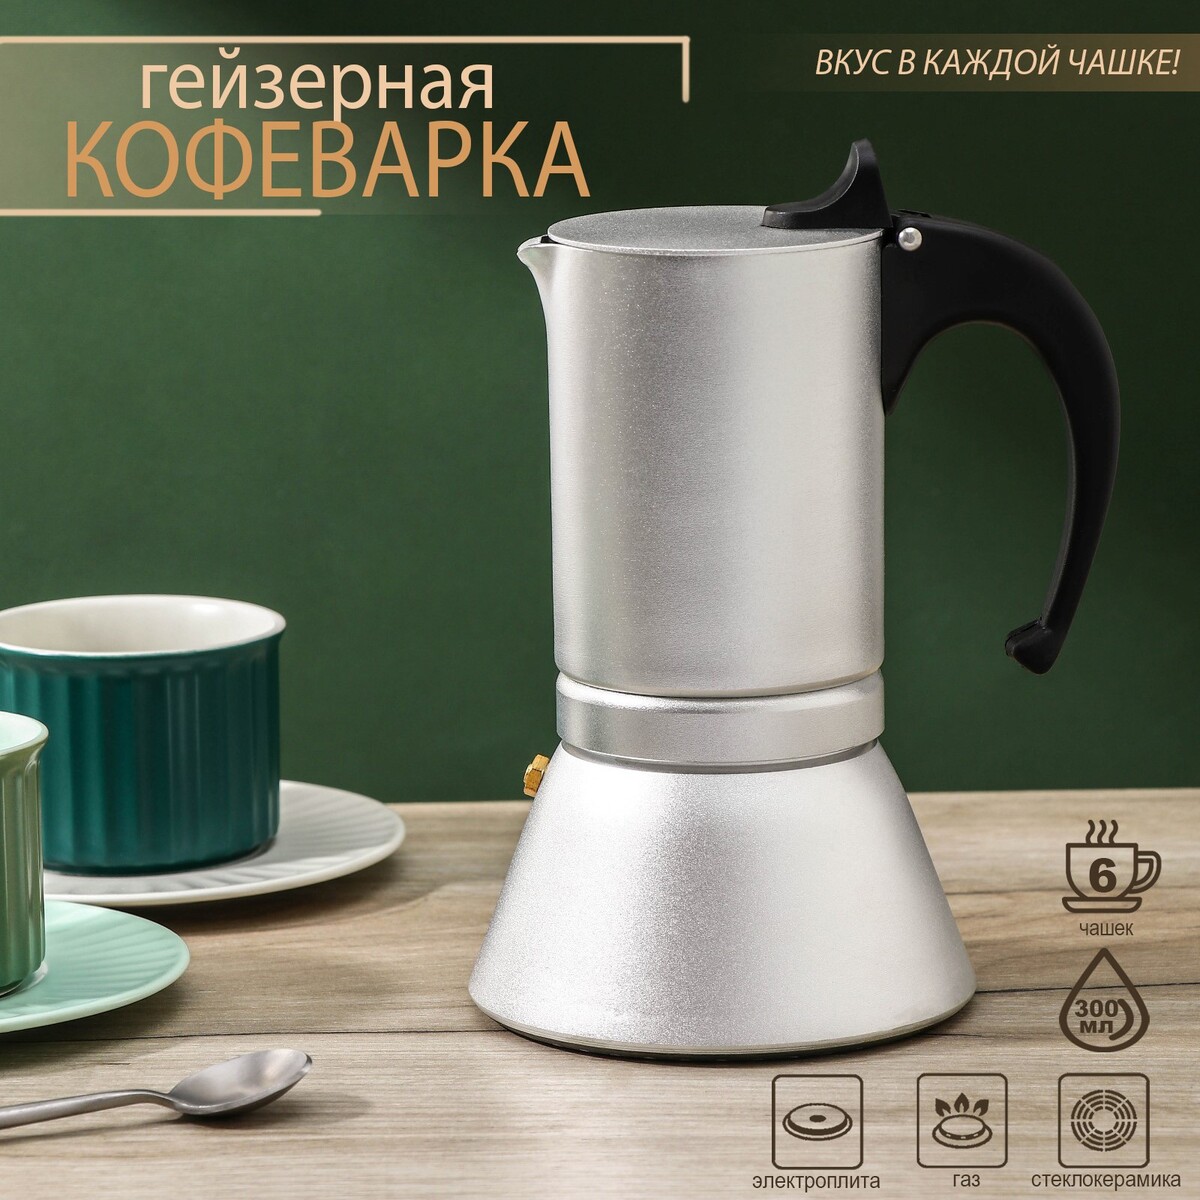 Кофеварка гейзерная magistro salem, на 6 чашек, 300 мл, индукция кофеварка гейзерная bialetti moka express nera 6 порций 4953